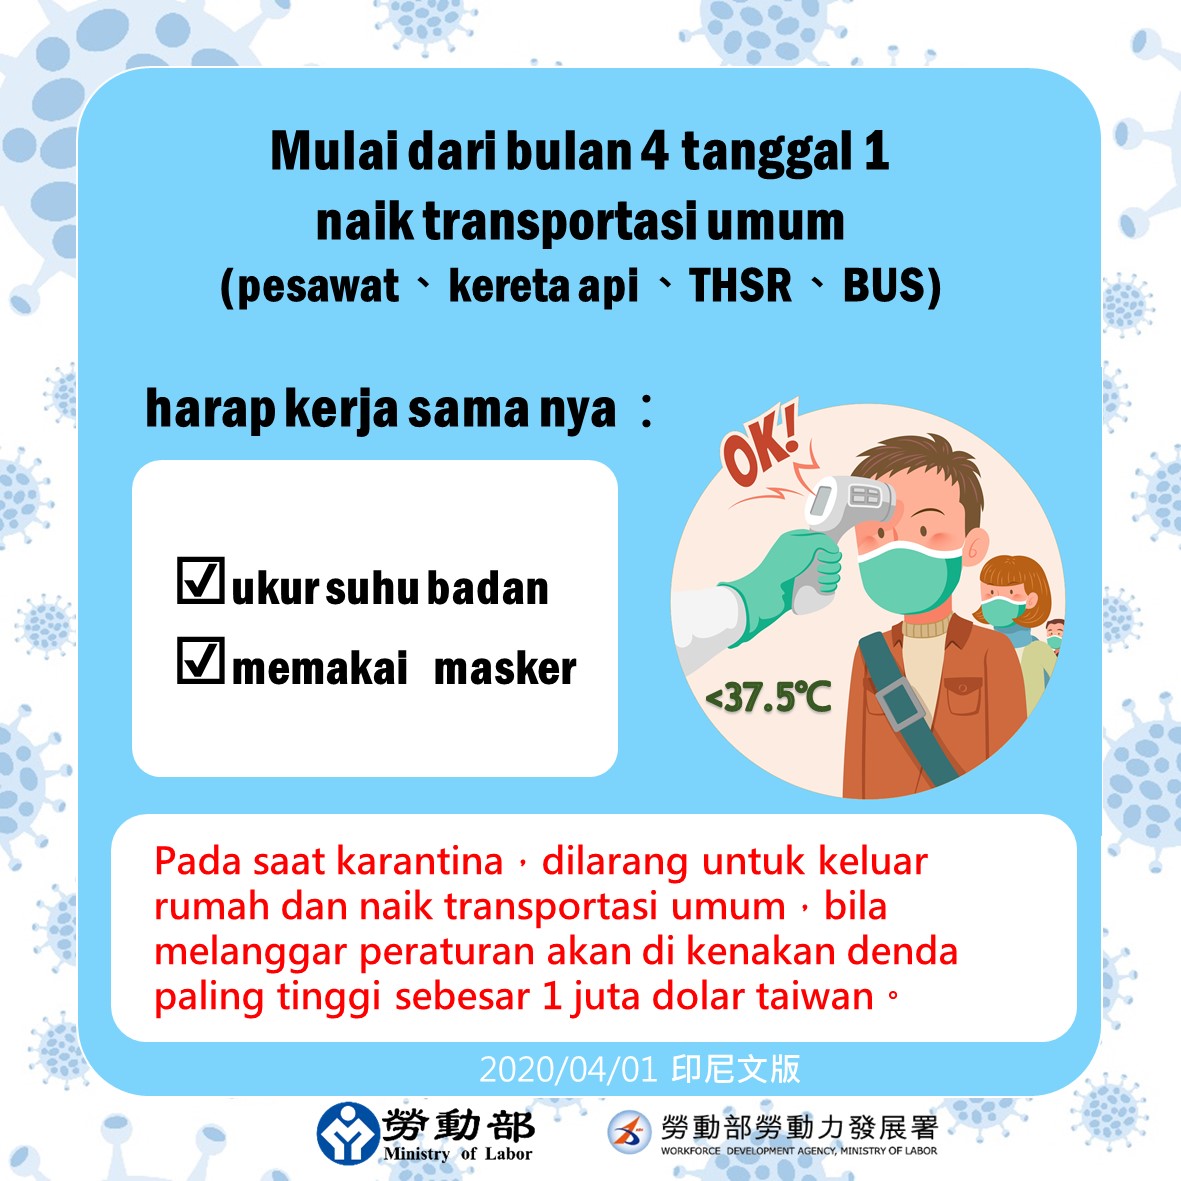 自4月1日起搭乘大眾運輸系統請配合測量體溫戴口罩-印尼文.JPG